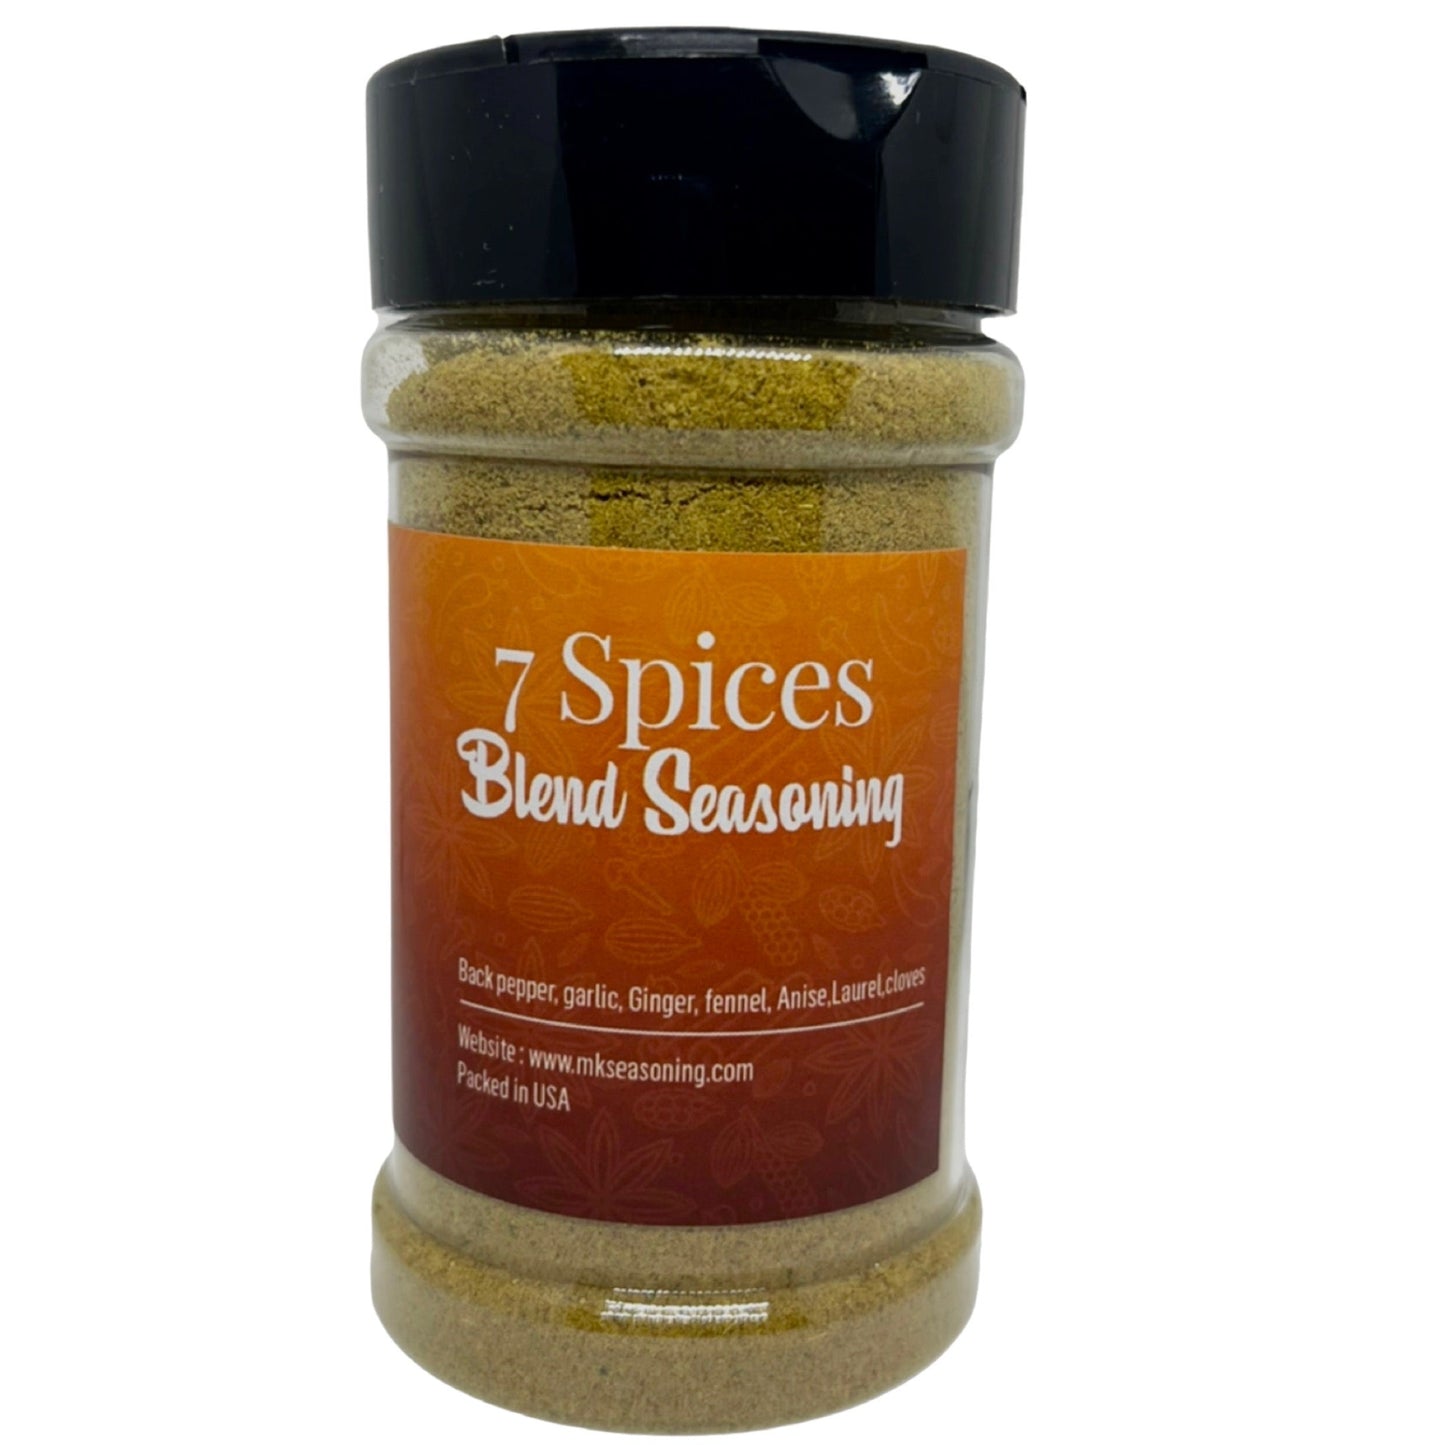 Spices bundles